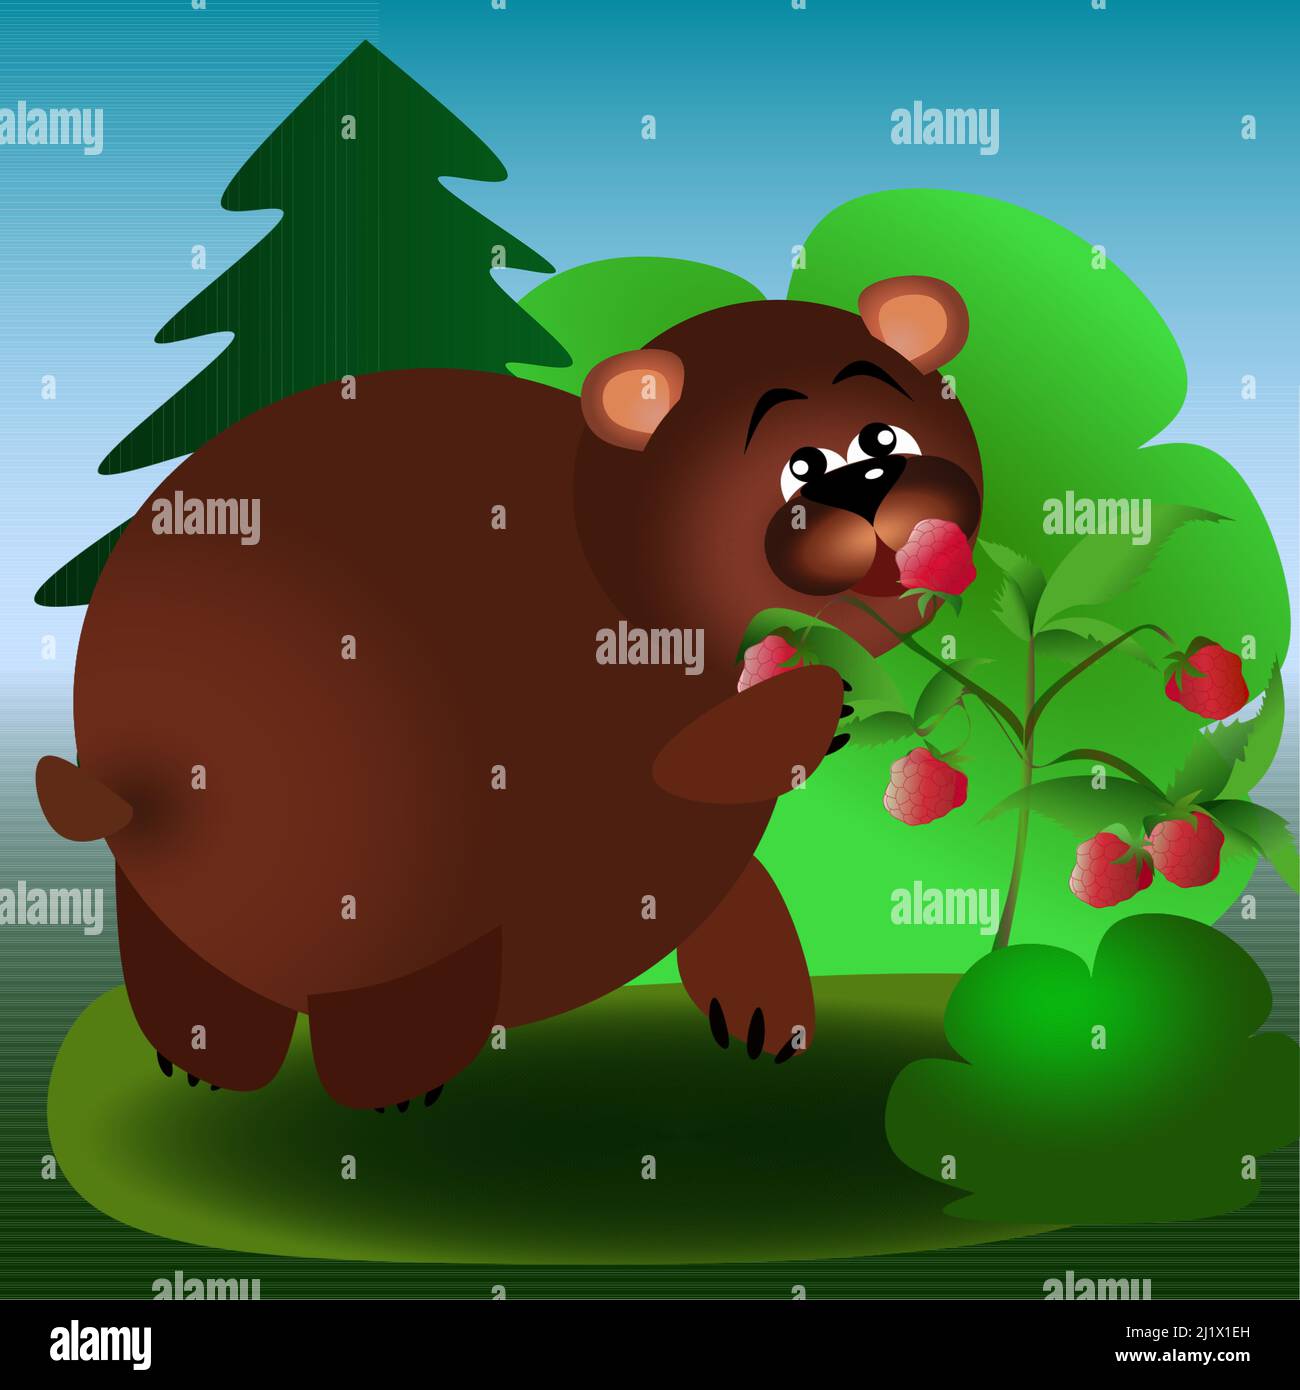 Encuentre 7 diferencias de oso marrón en el bosque comiendo frambuesas ilustración para niños Ilustración del Vector